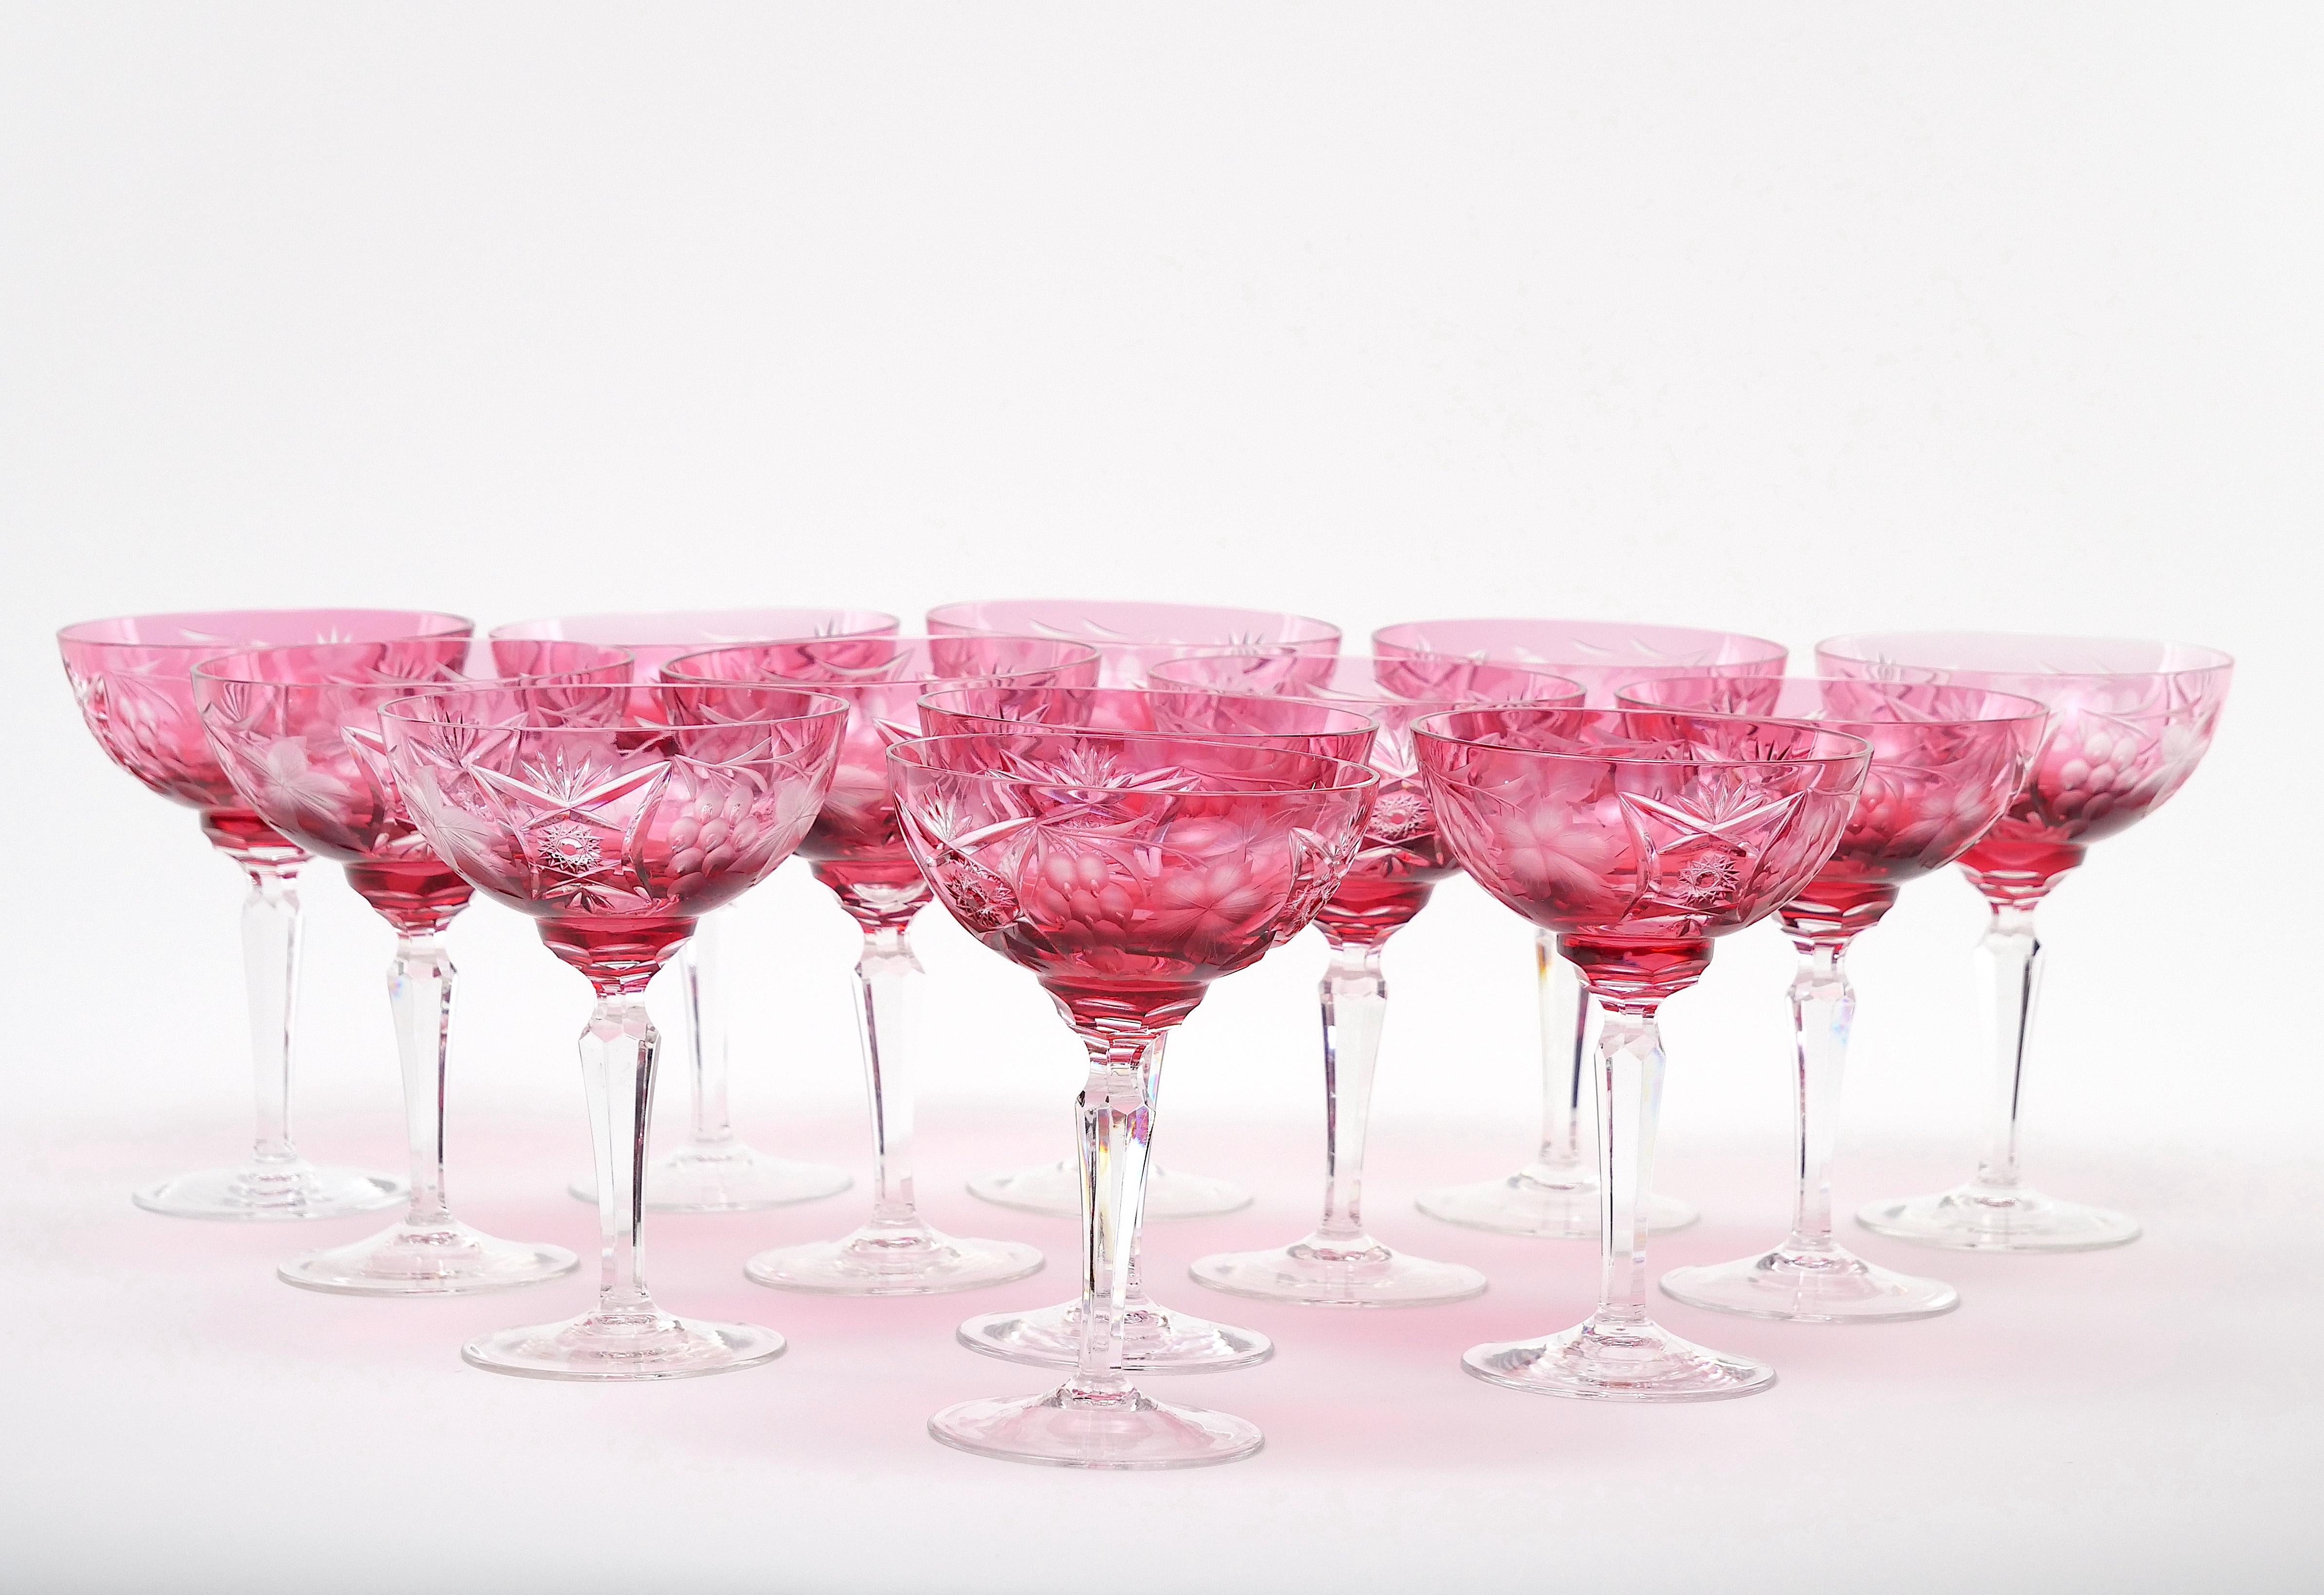 
Rehaussez vos élégantes soirées avec notre exquise vaisselle gravée à la main de Val-Saint-Lambert ou notre service de coupes de champagne en cristal pour 12 personnes. Fabriquée avec la plus grande précision et le plus grand art, chaque coupe de